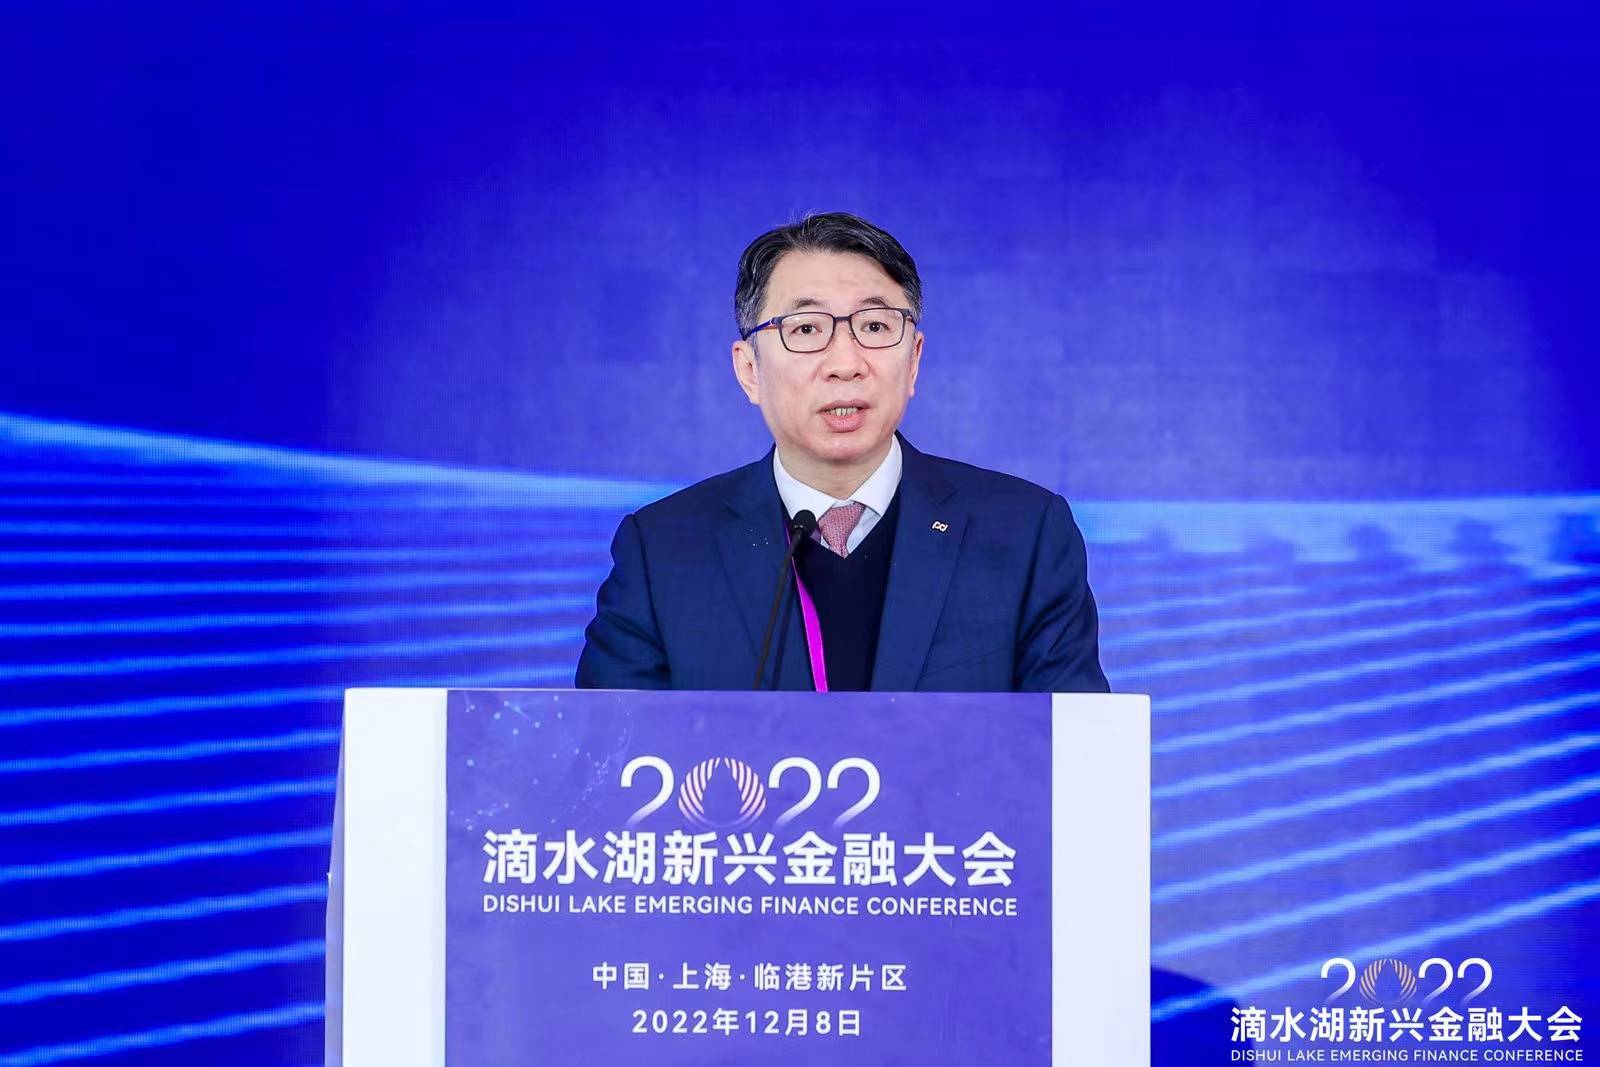 浦发银行董事长郑杨:坚持开放与创新 推进跨境金融高质量发展